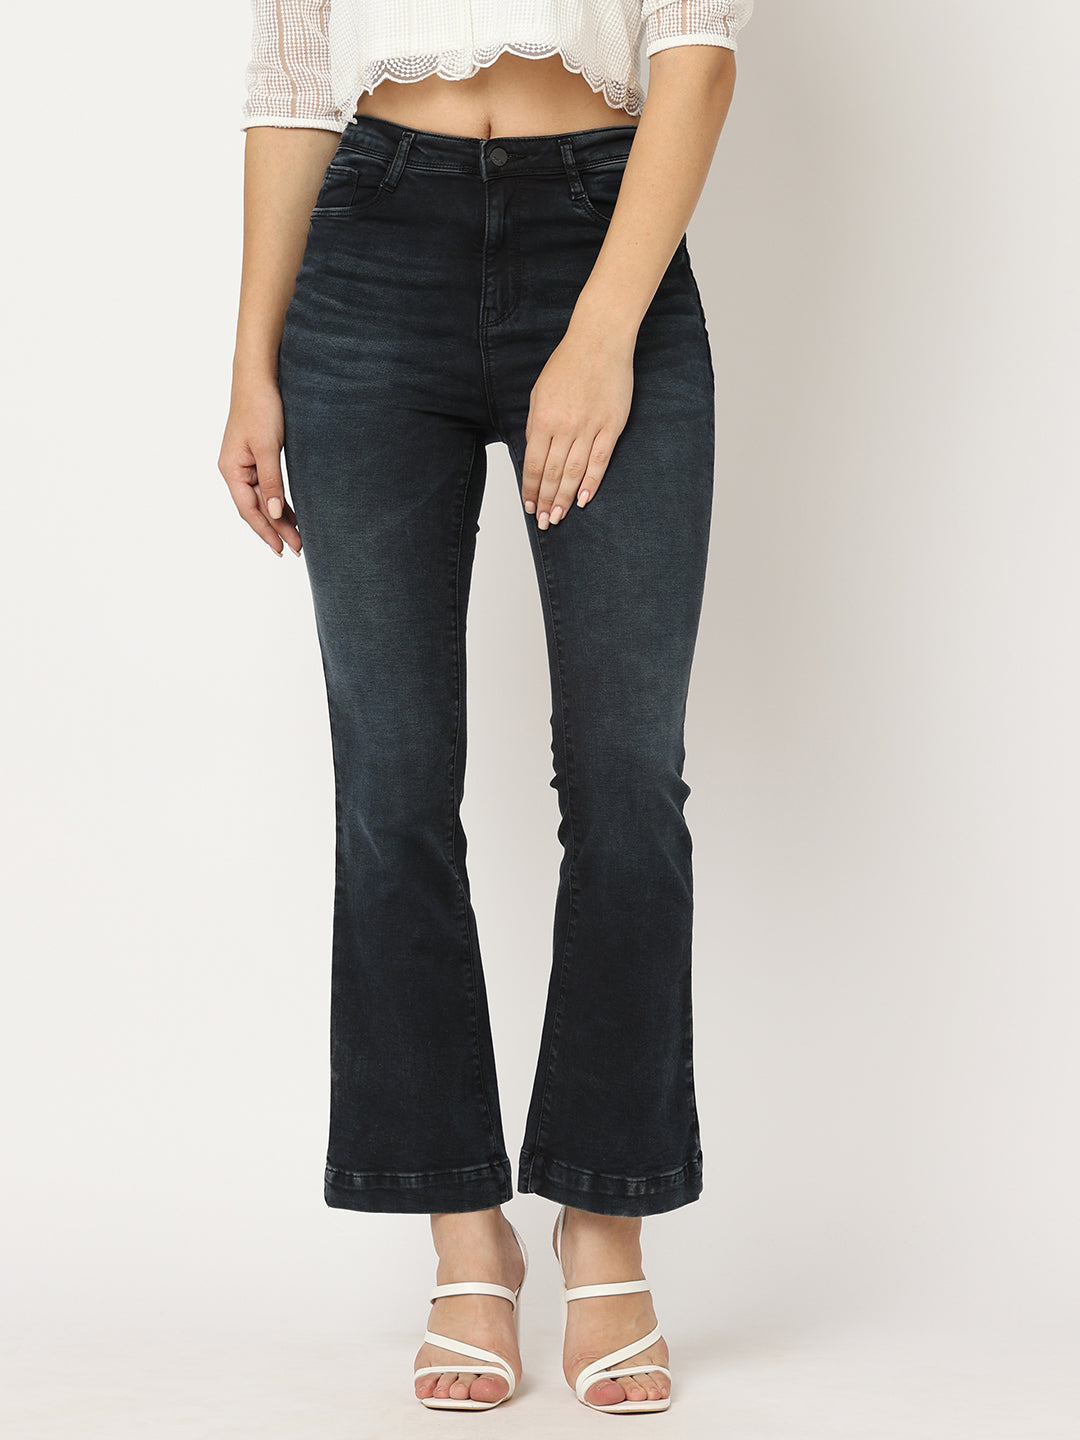 Shop Women Jeans Online, Denim Jeans, Denim Pants